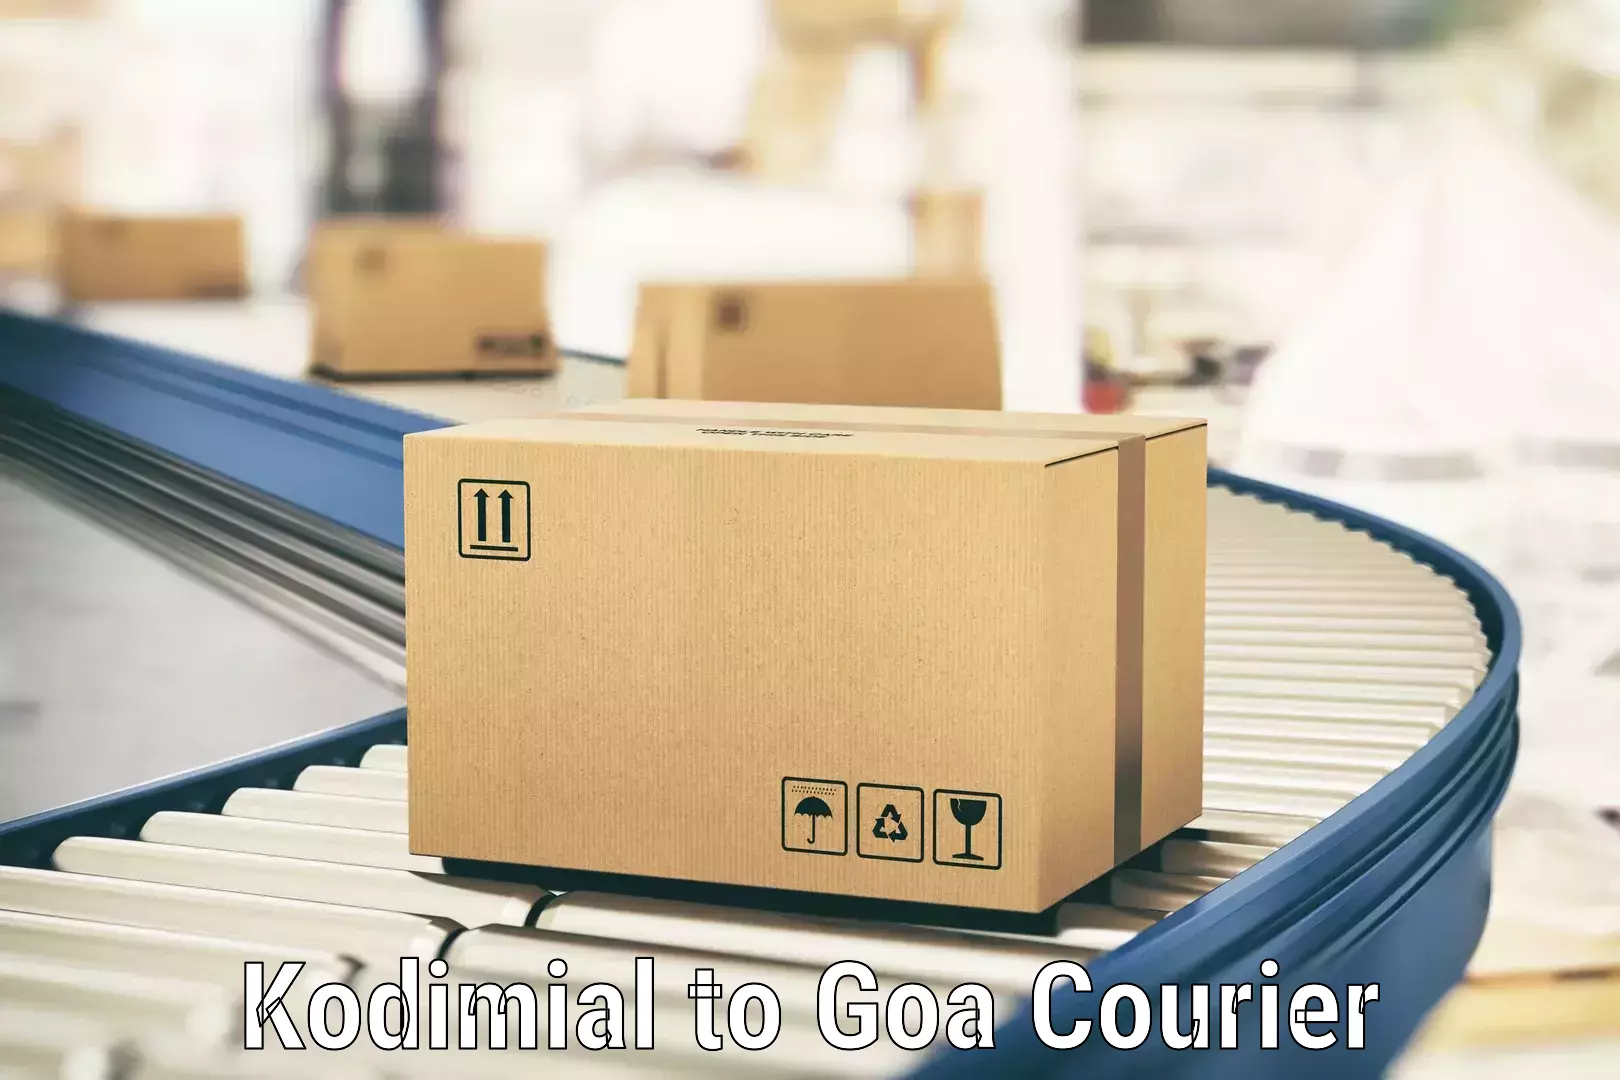 Optimized delivery routes Kodimial to Vasco da Gama